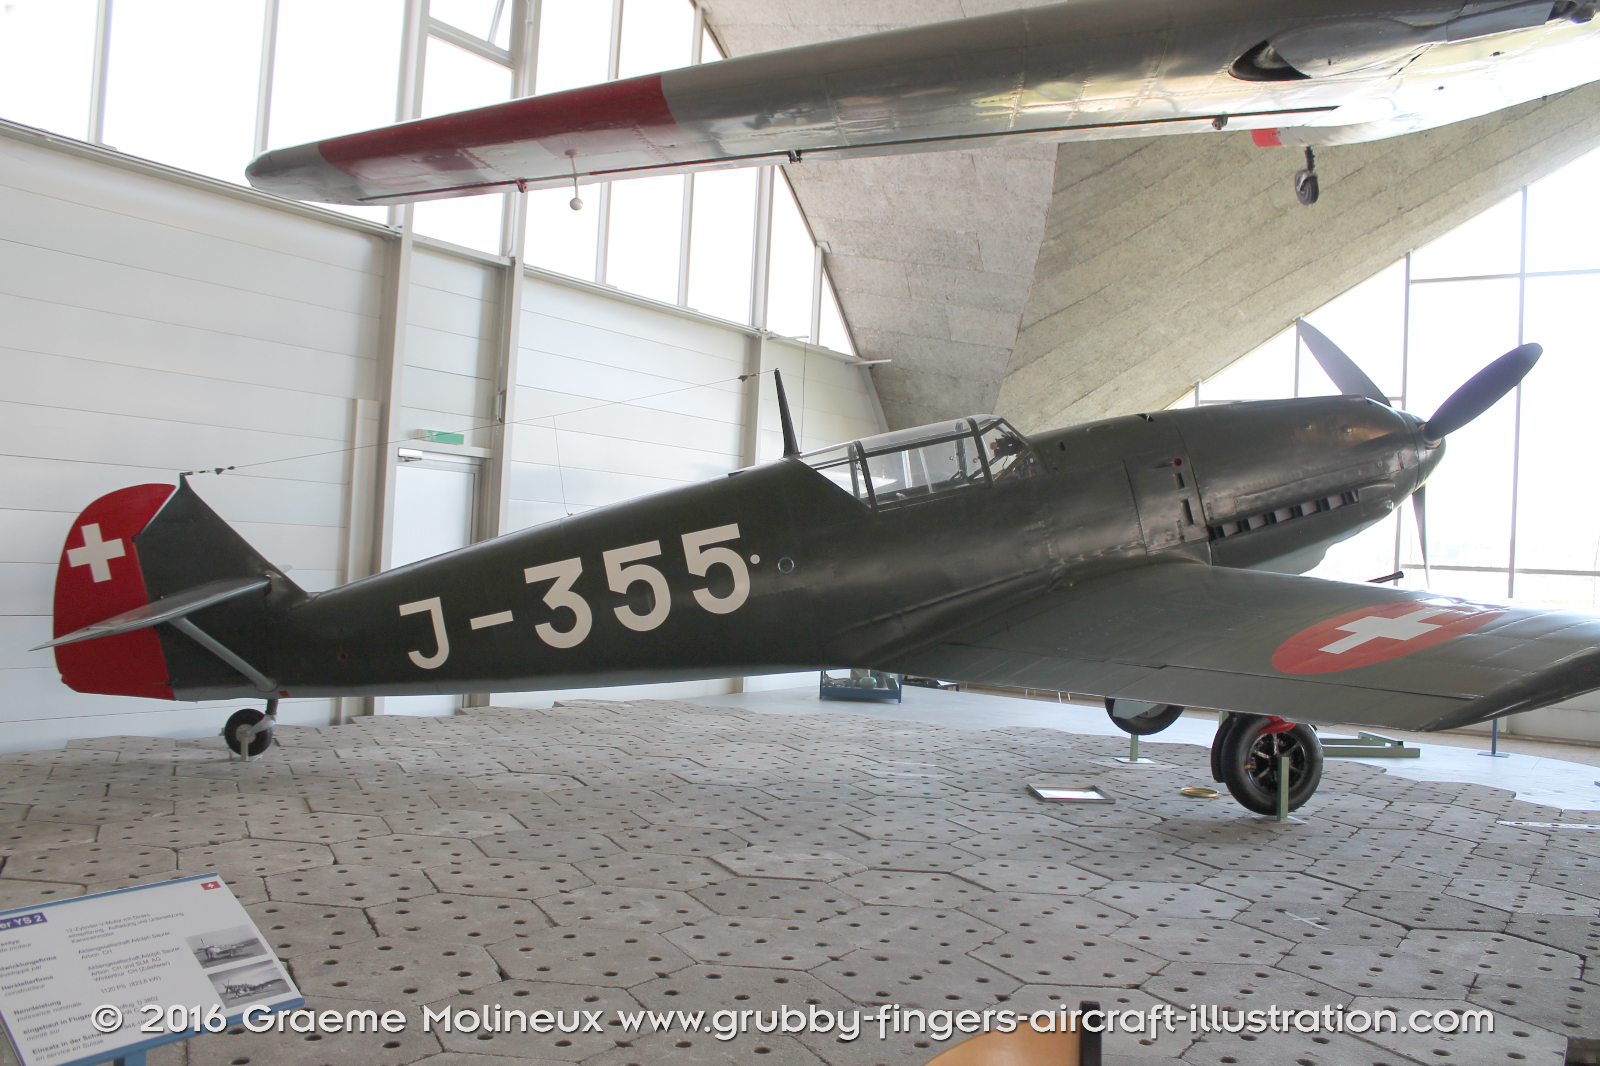 MESSERSCHMITT_BF_109E_J-355_Swiss_Air_Force_Museum_2015_03_GrubbyFingers